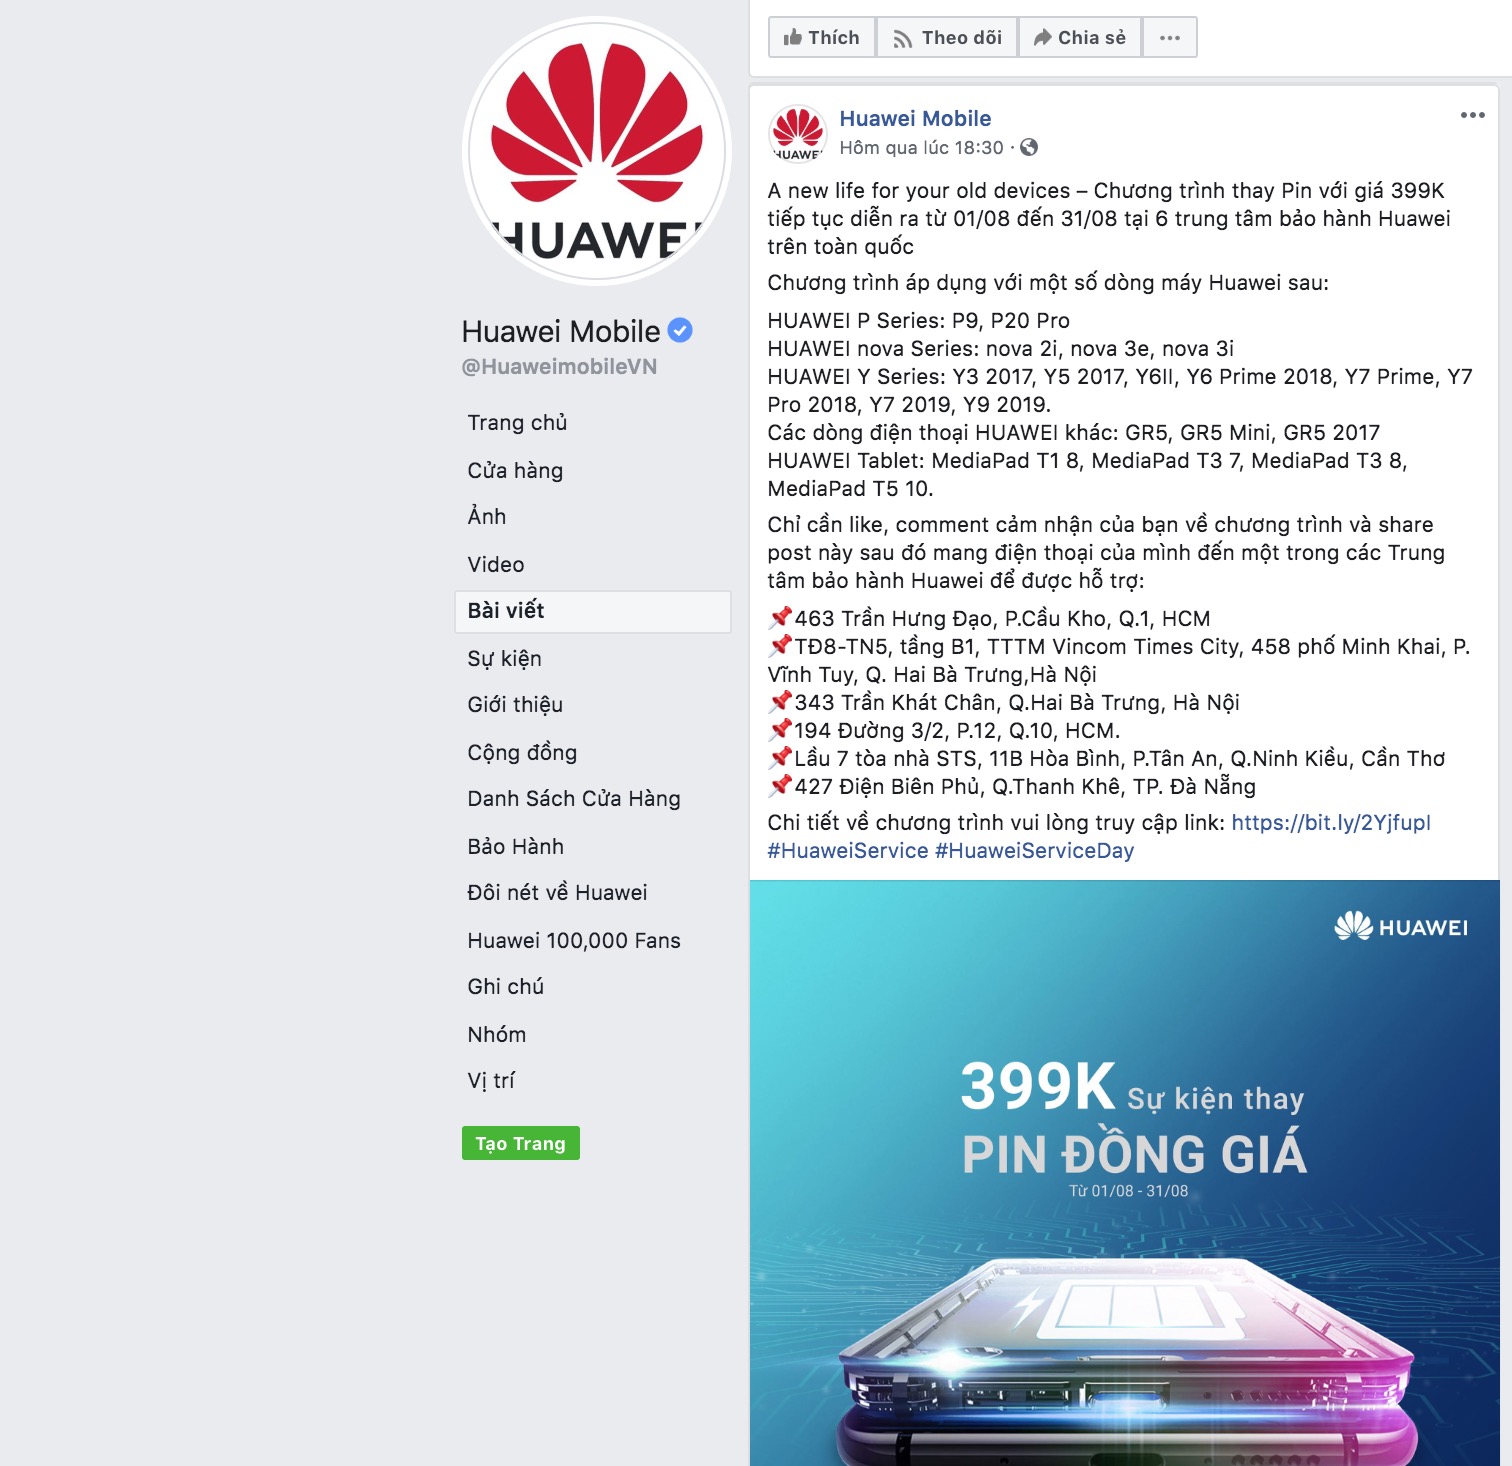 Huawei Việt Nam triển
khai chương trình thay pin đồng giá 399k, thời hạn đến ngày
31 tháng 8